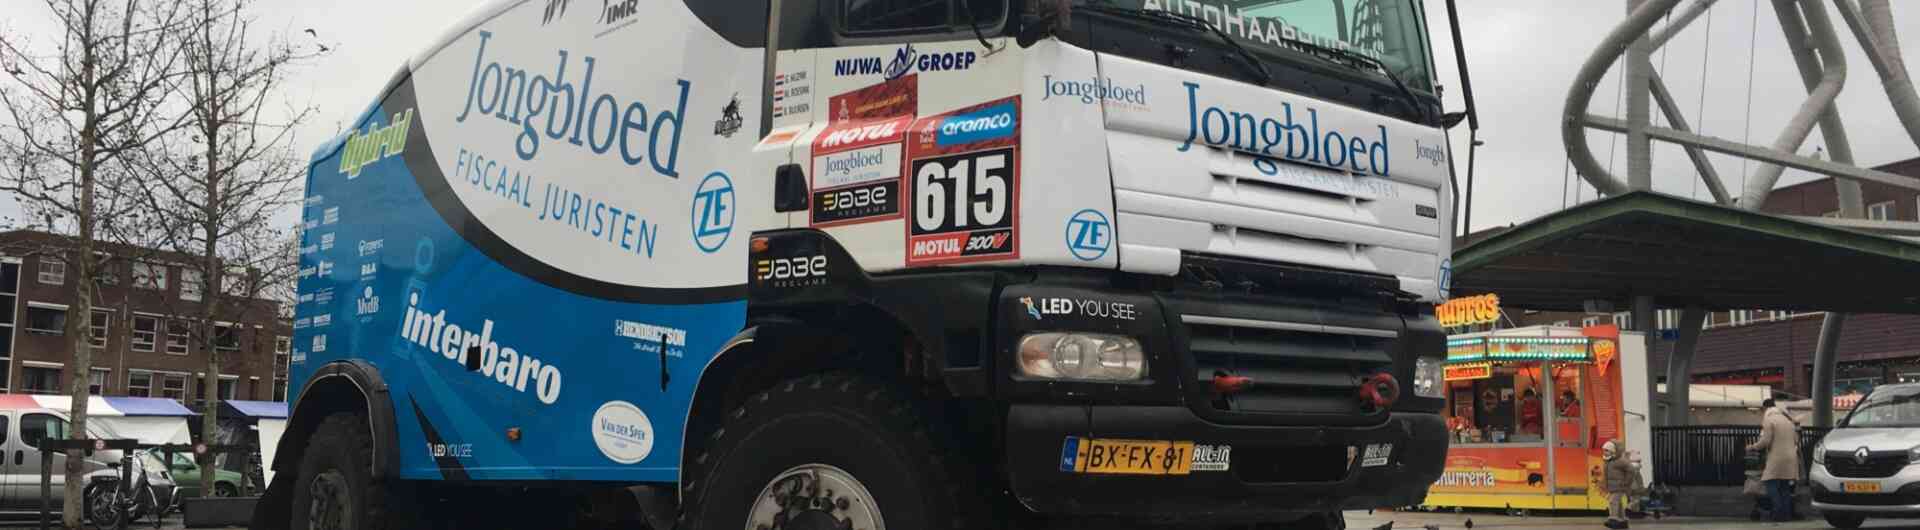 Jongbloed Dakar Team